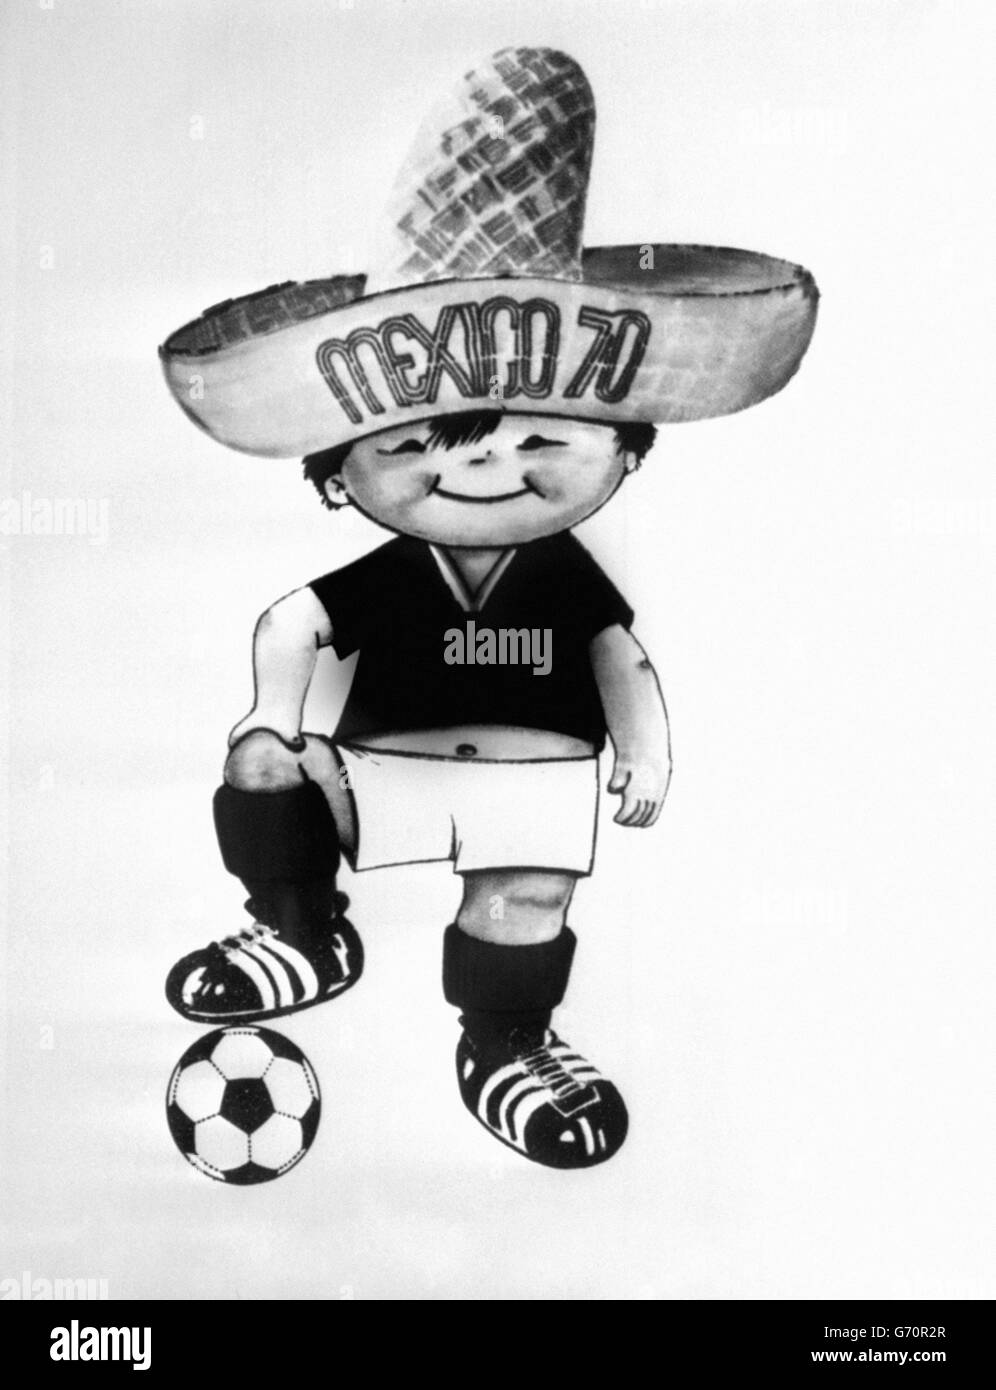 Calcio - Coppa del mondo FIFA - Messico 1970 Mascot - Juanito. Mascotte della Coppa del mondo del Messico chiamata Juanito. Mostra un ragazzino indiano con un sombrero enorme, che tiene un calcio. Foto Stock